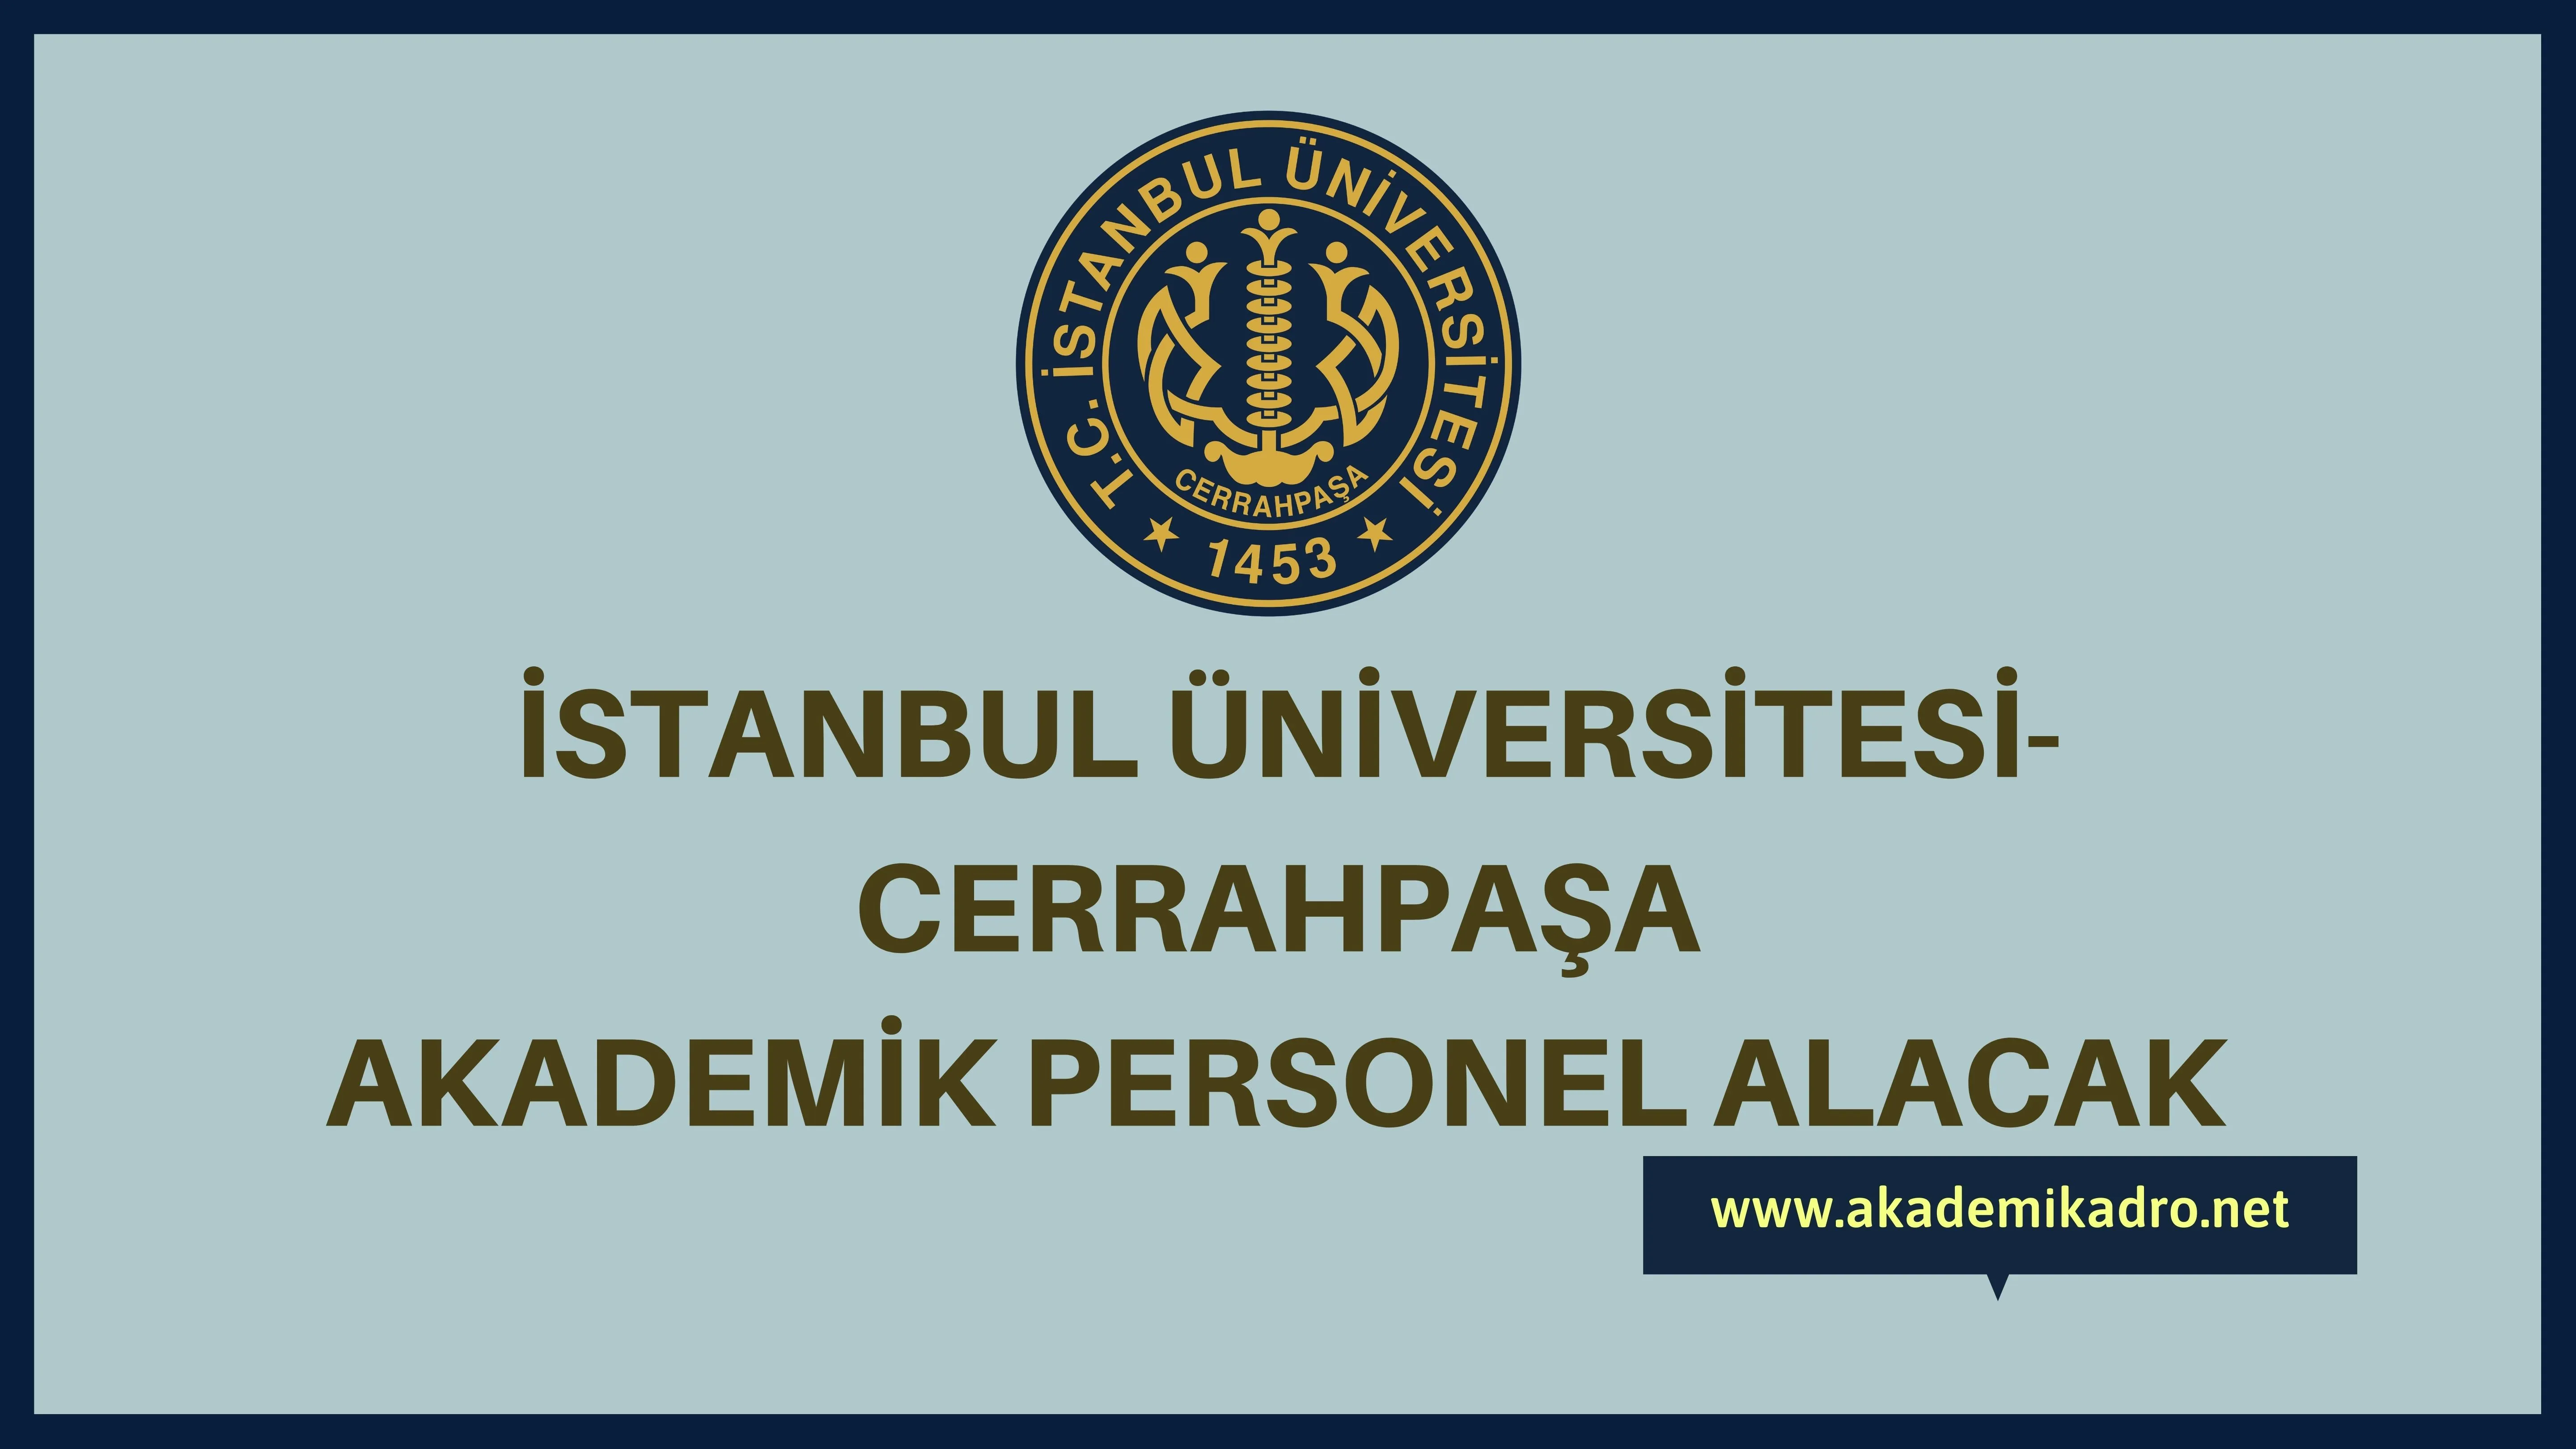 İstanbul Üniversitesi-Cerrahpaşa birçok alandan 79 Akademik personel alacak.